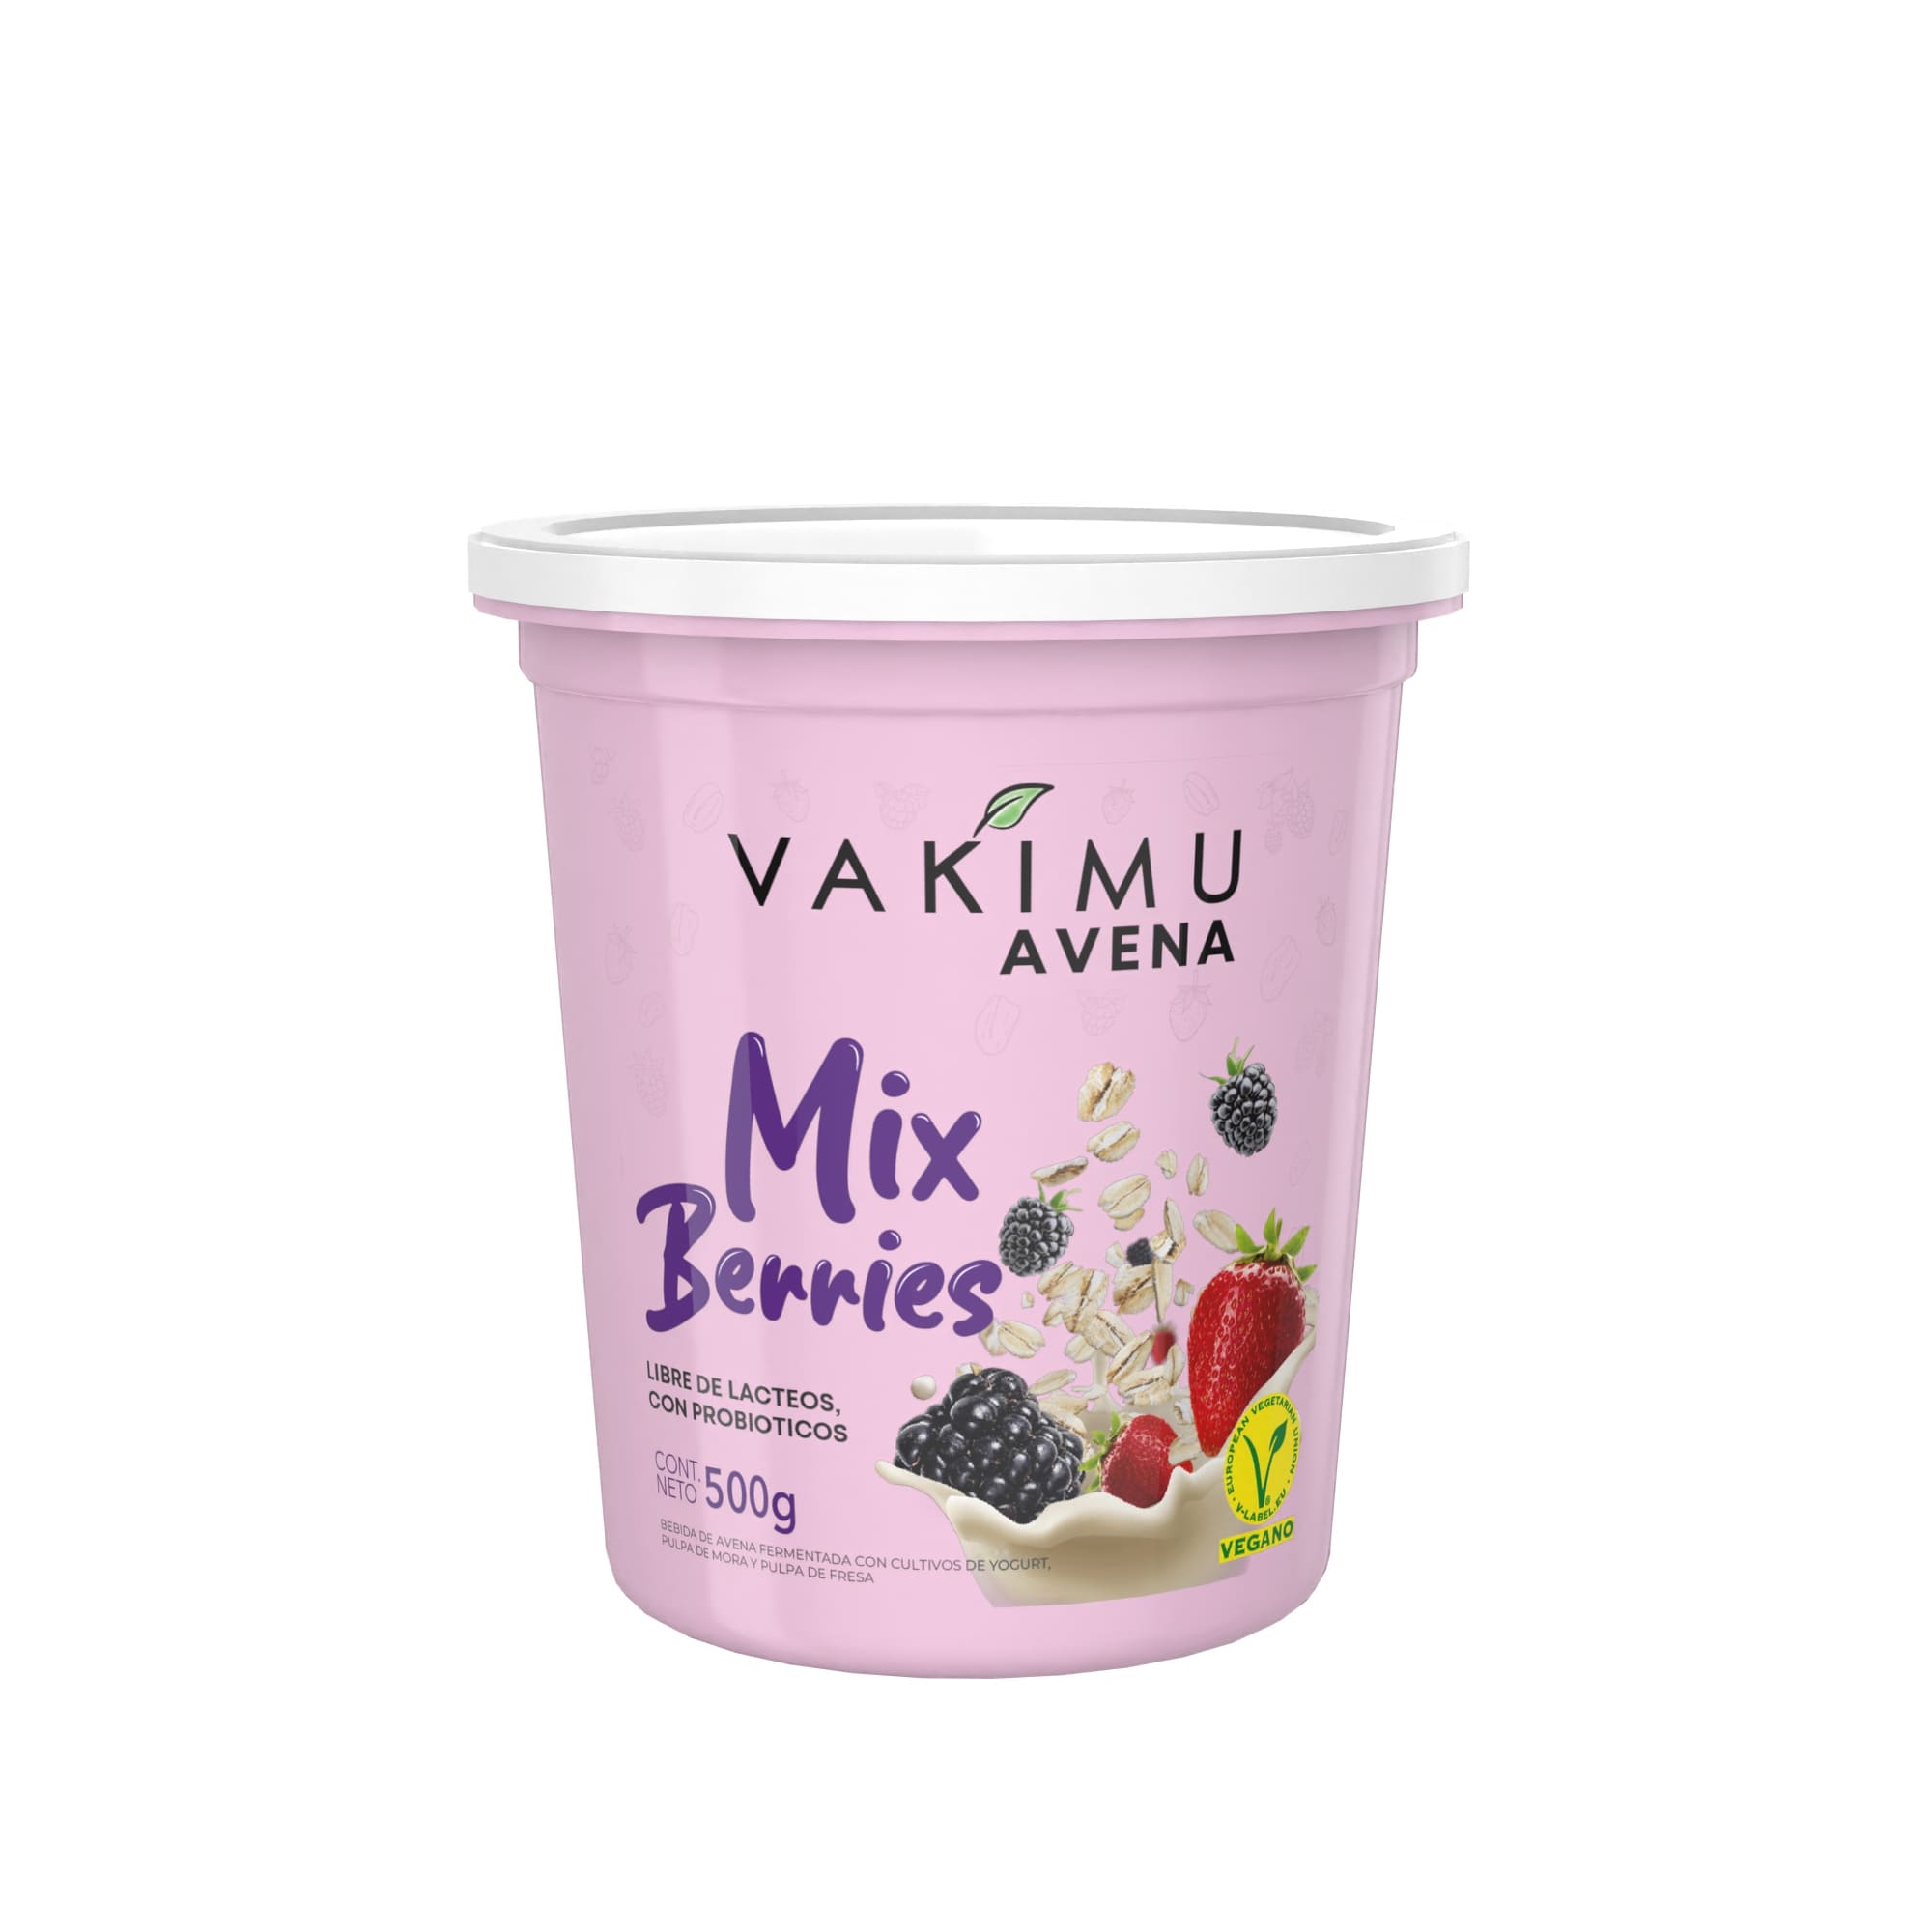 Avena Vakimu Mix Berries 500g